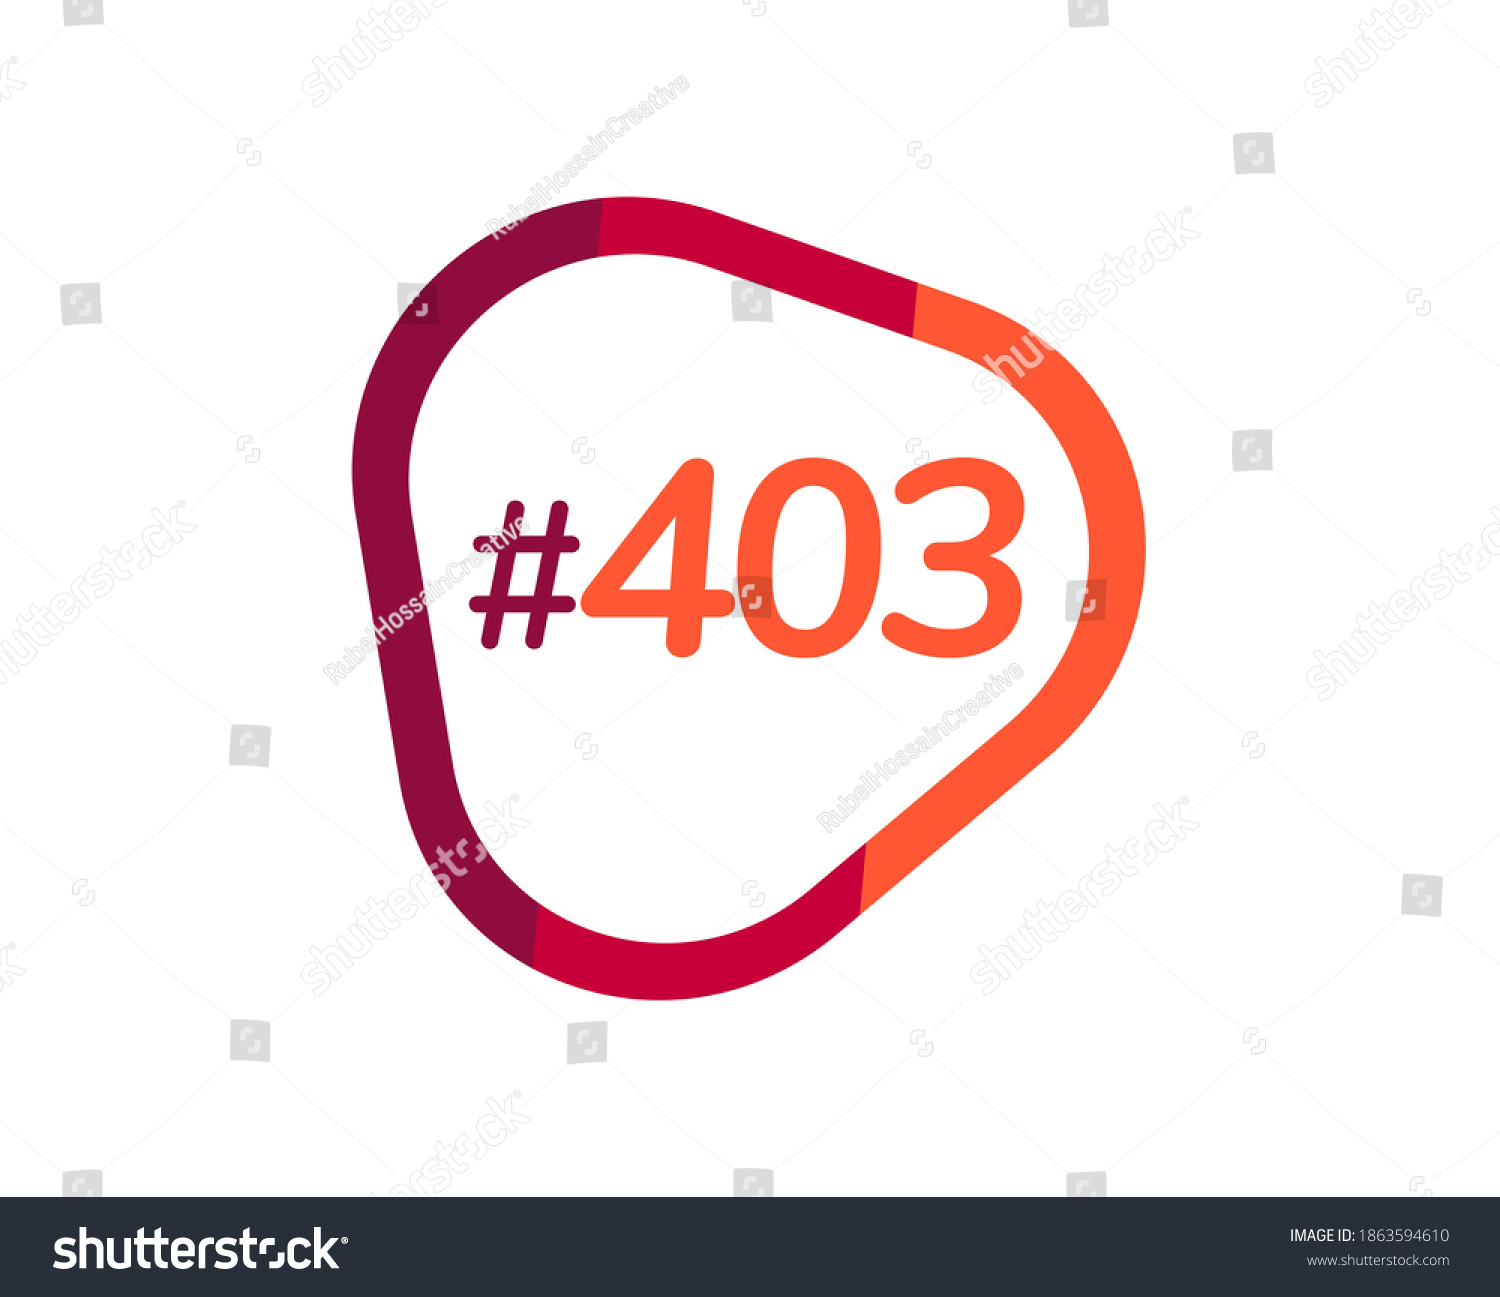 SVG of Number 403 image design, 403 logos svg